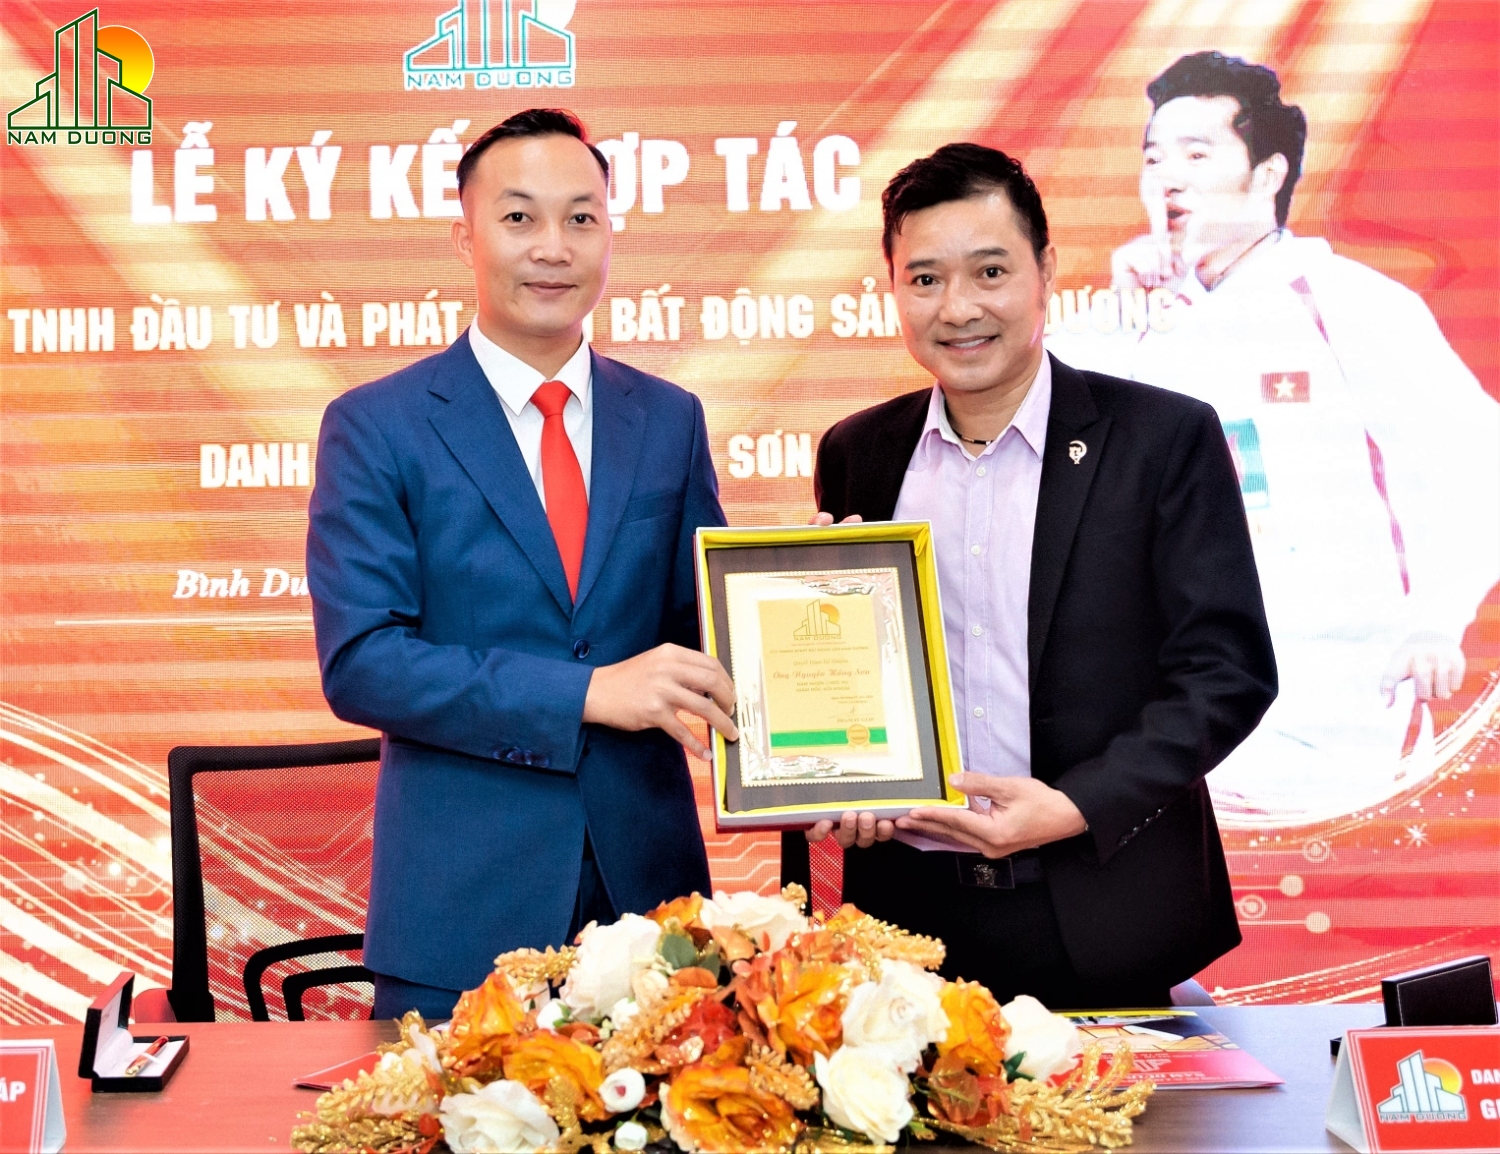 lễ ký kết hợp tác bổ nhiệm danh thủ Nguyễn Hồng Sơn làm giám đốc đối ngoại của công ty